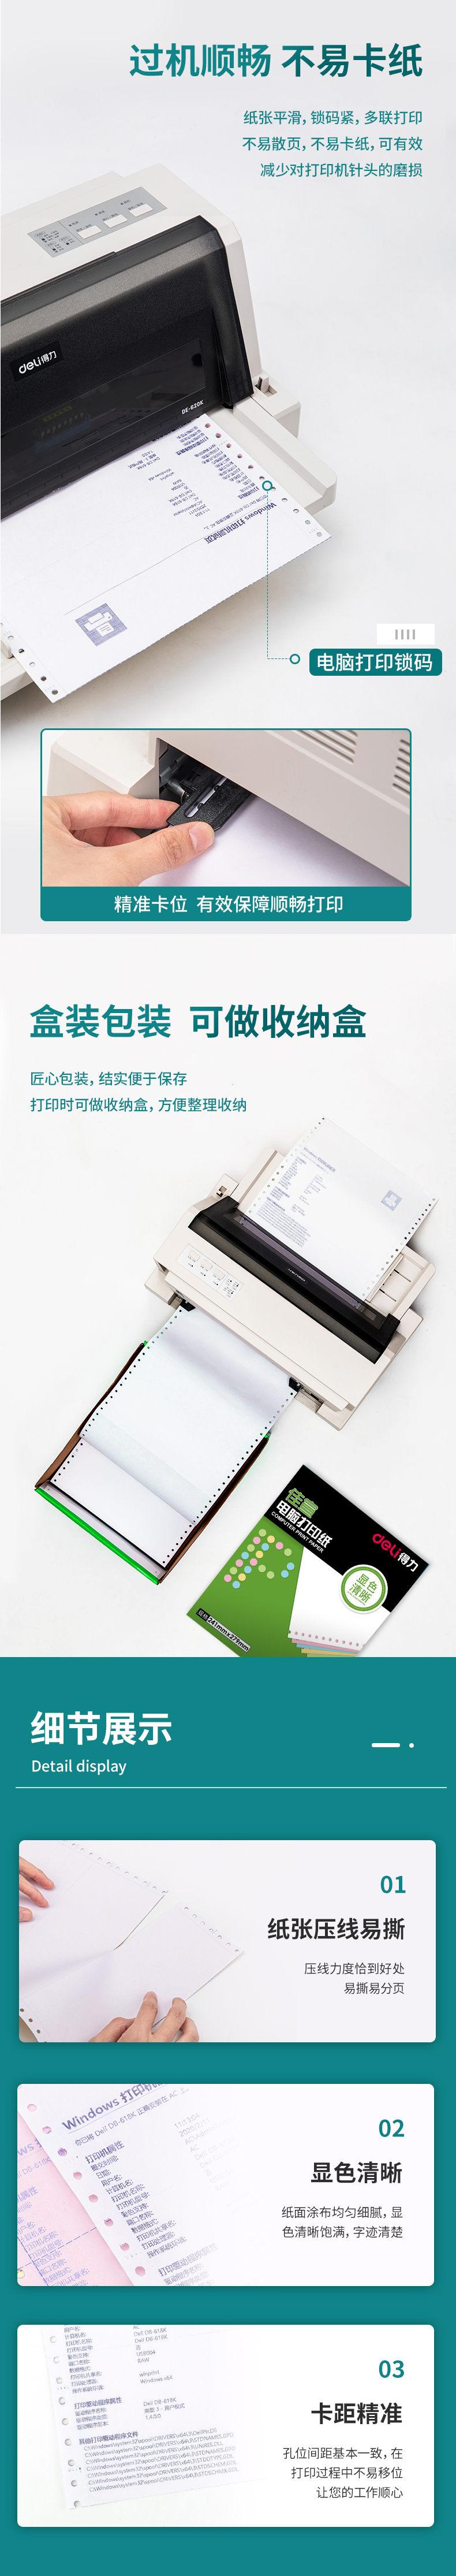 得力佳宣J241-2电脑打印纸(13白色不撕边)(盒)_03.jpg